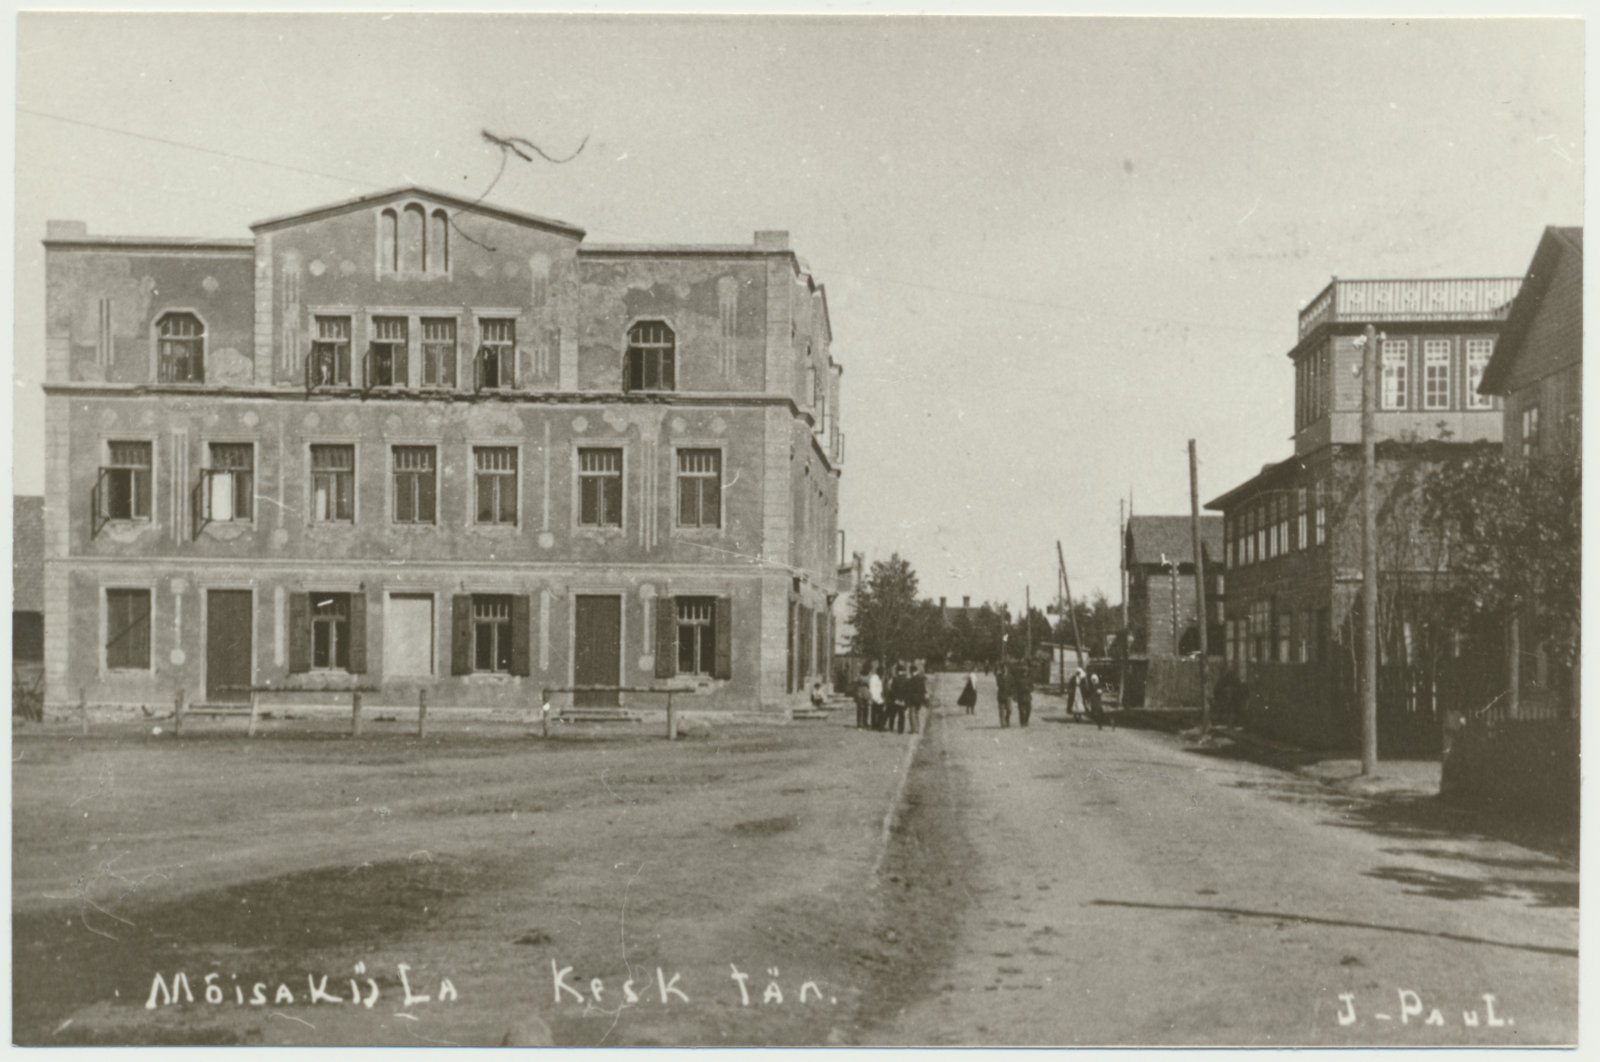 foto, Mõisaküla, Kesk tn, 1930, foto J. Paul